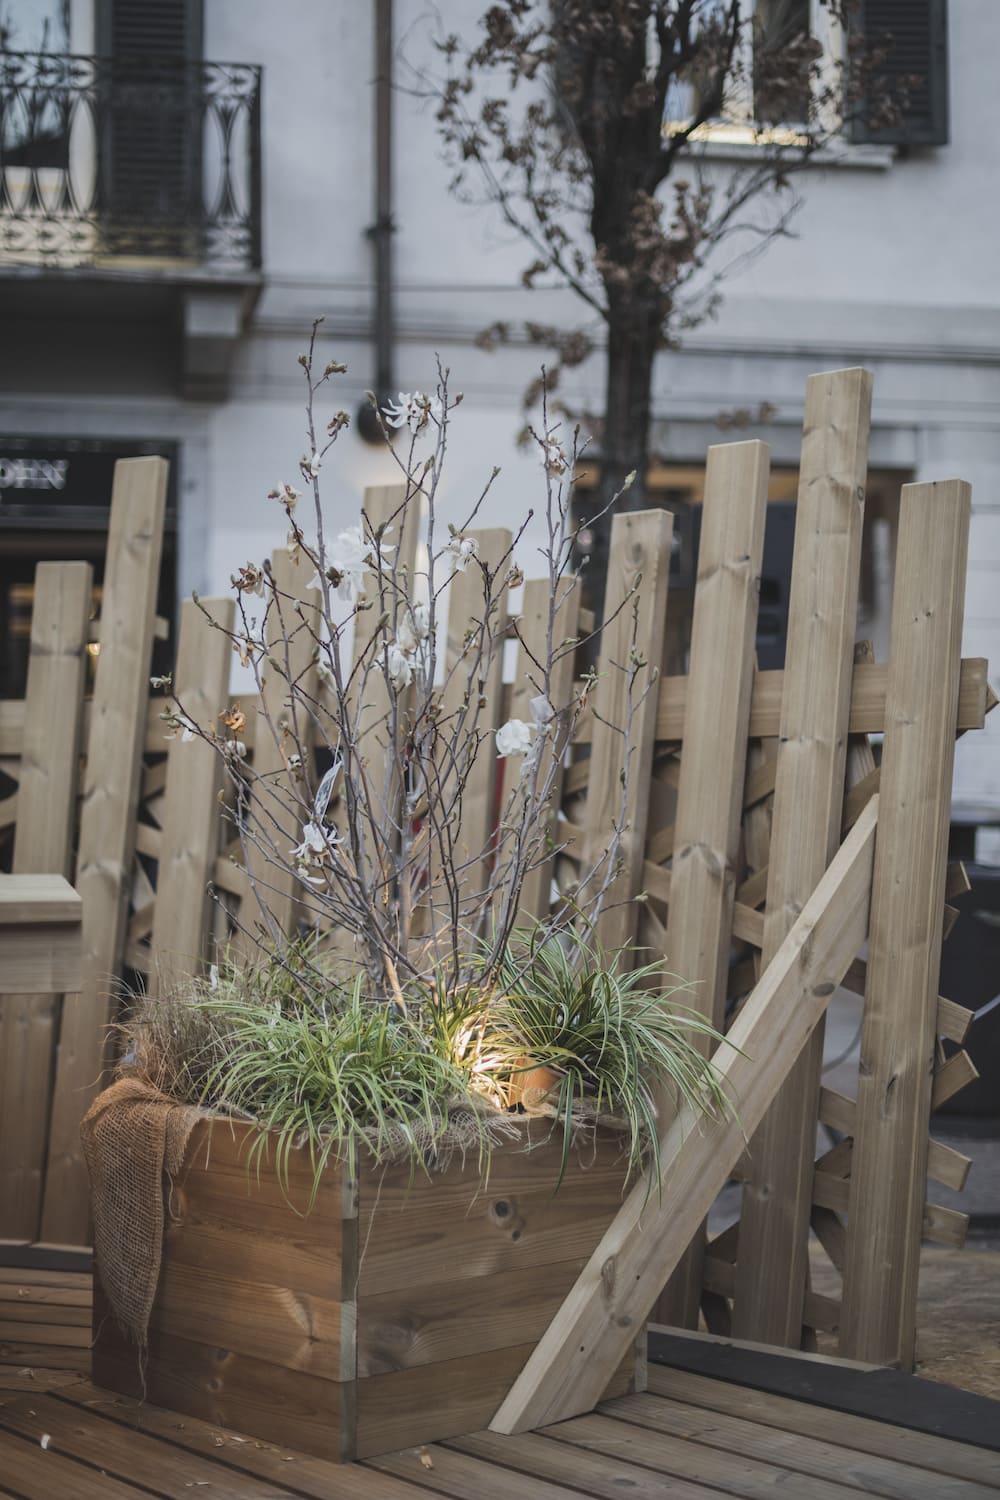 installazione in legno varese design week piazza del podesta magnolia piante spertini